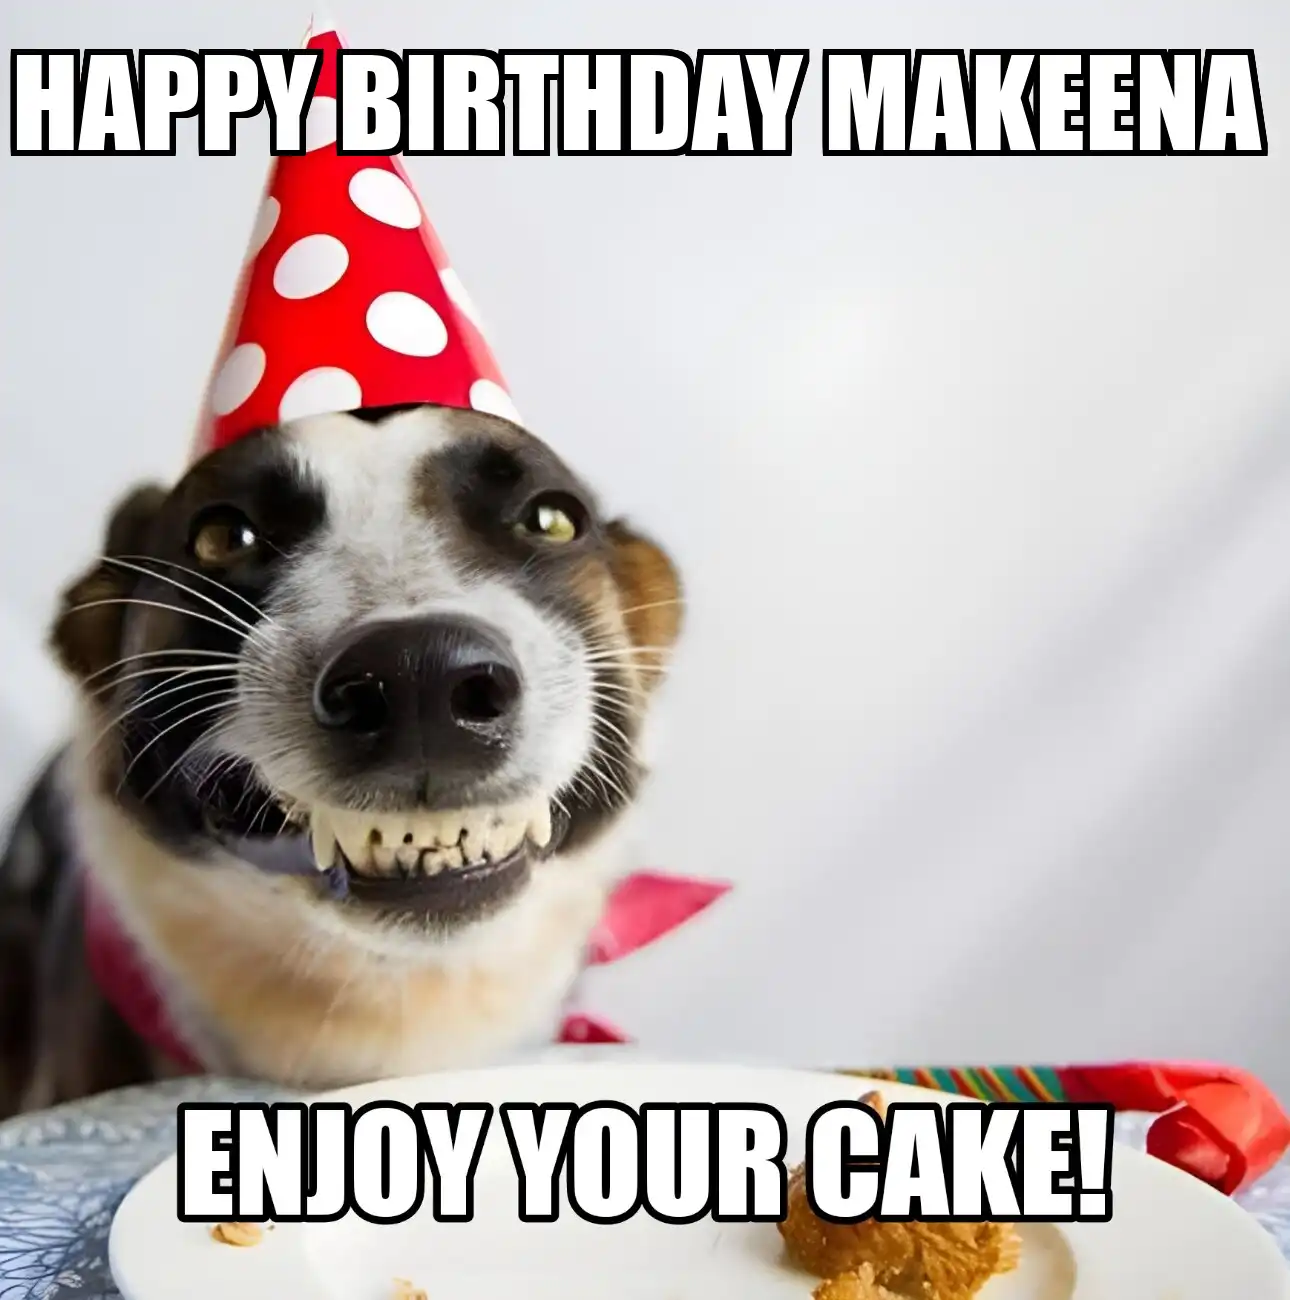 Happy Birthday Makeena Enjoy Your Cake Dog Meme